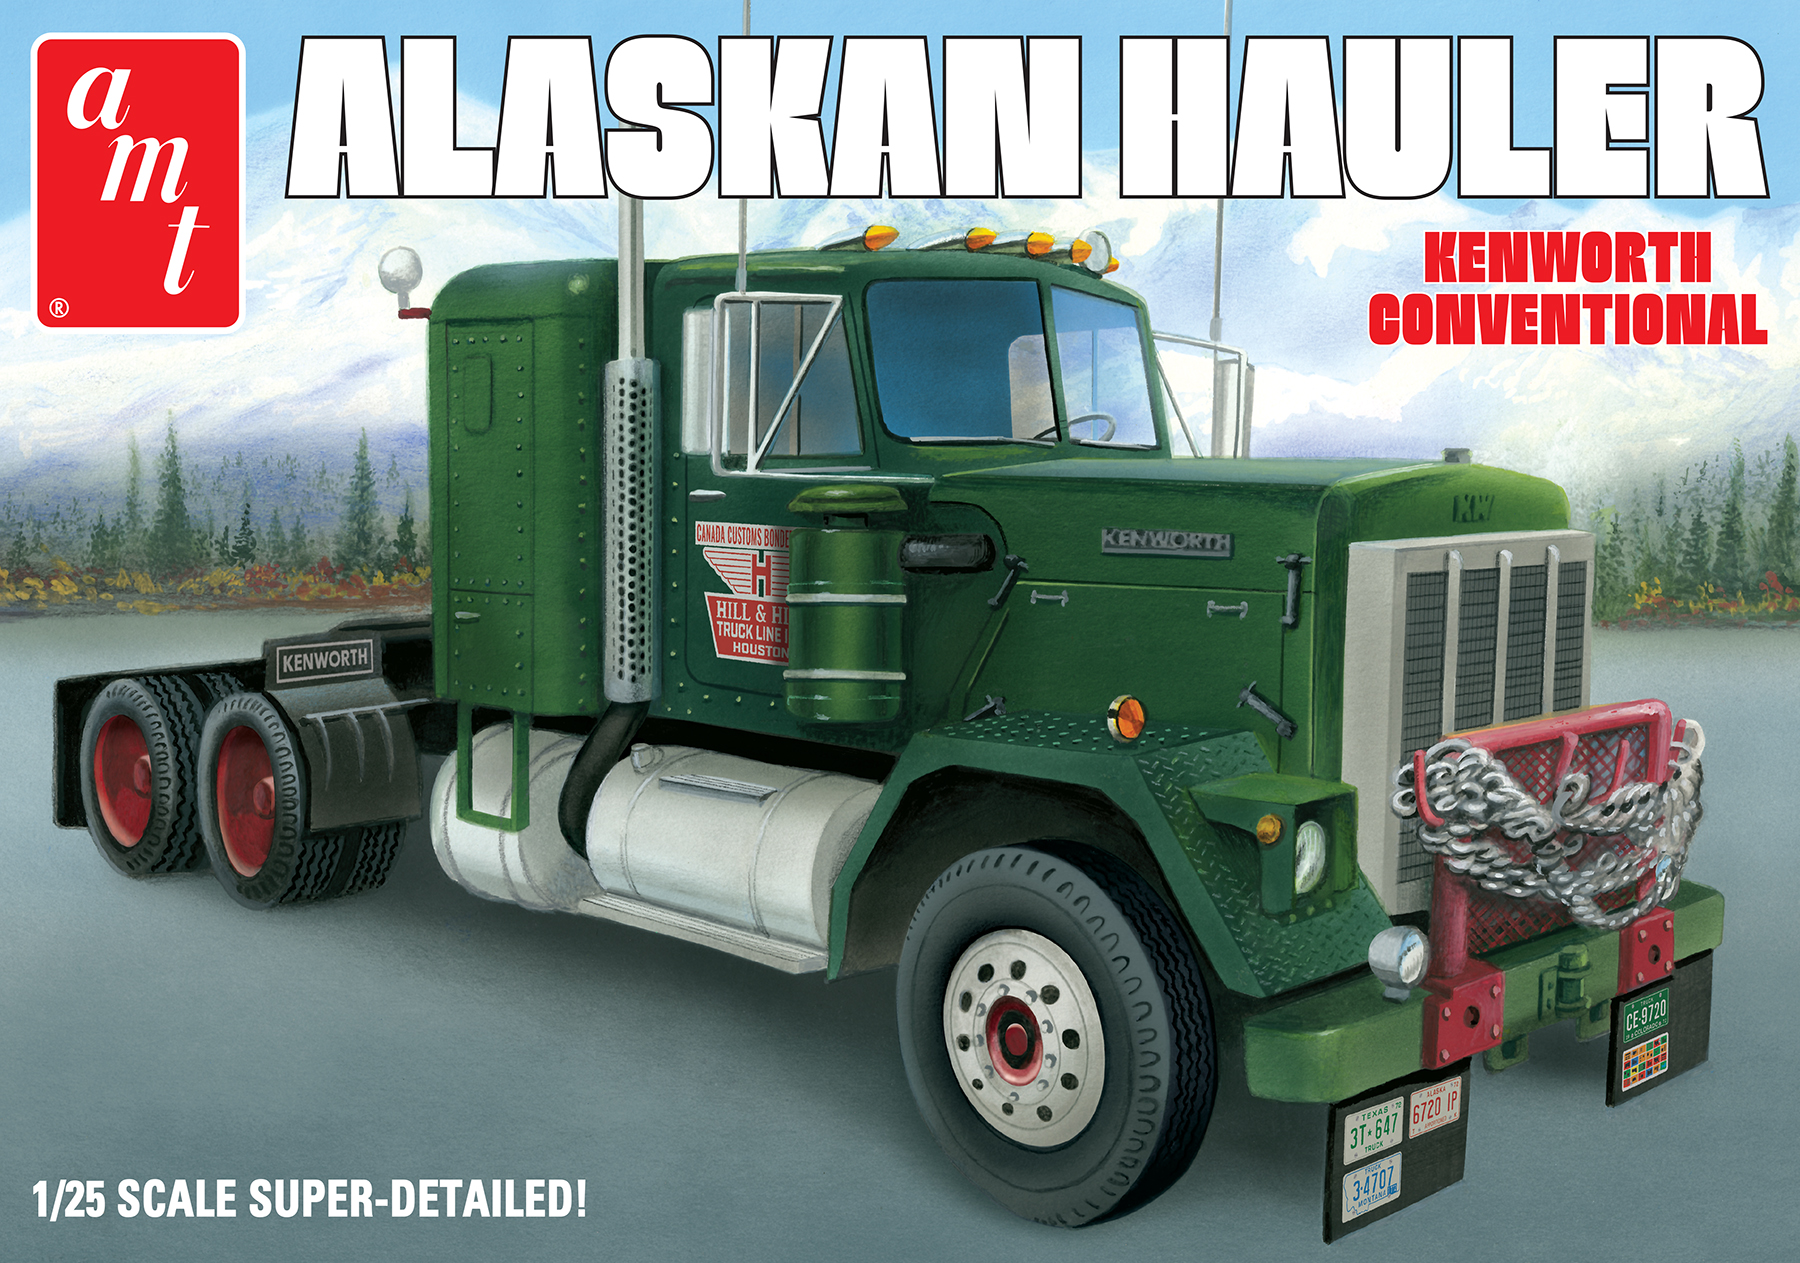 Alaskan Hauler Kenworth Tractor